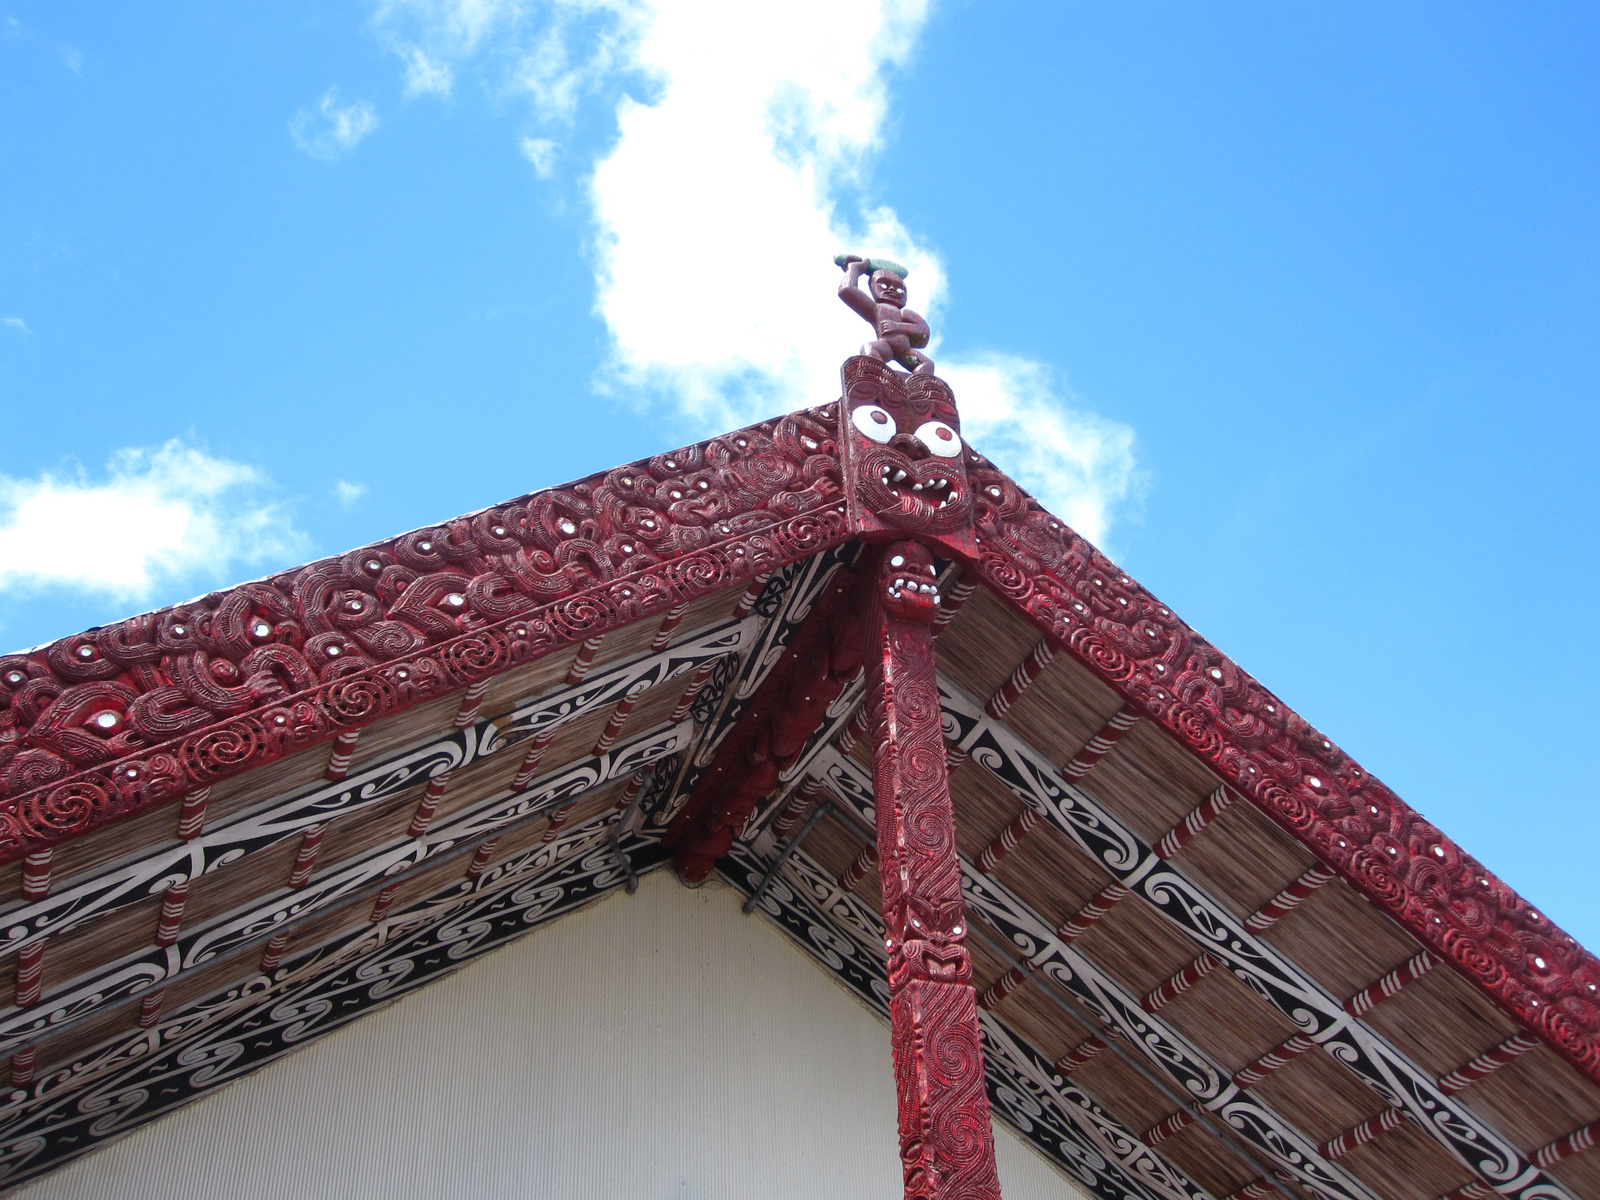 (100) Rotorua, maori közösségi ház